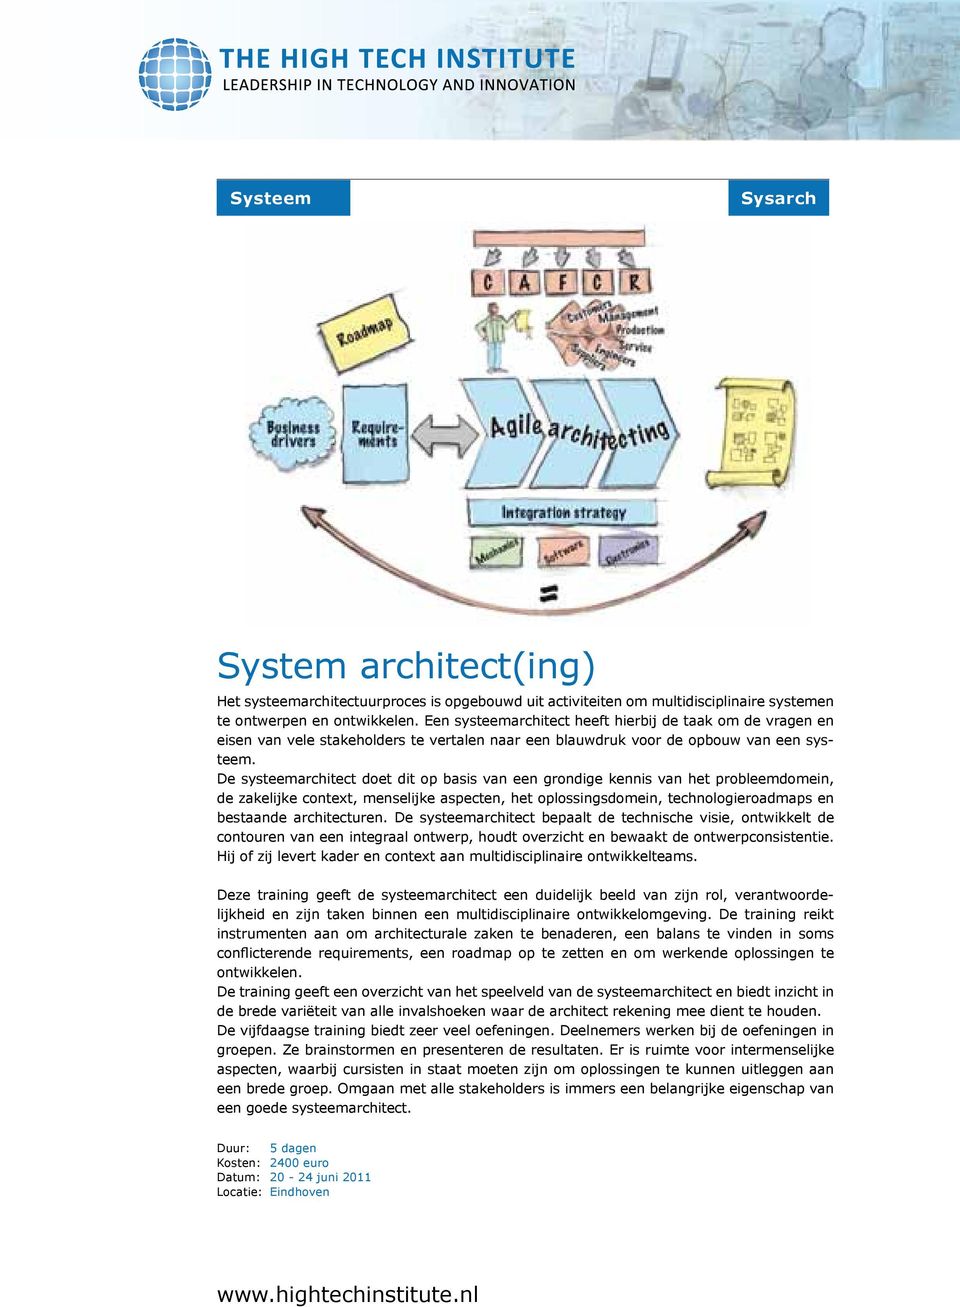 De systeemarchitect doet dit op basis van een grondige kennis van het probleemdomein, de zakelijke context, menselijke aspecten, het oplossingsdomein, technologieroadmaps en bestaande architecturen.